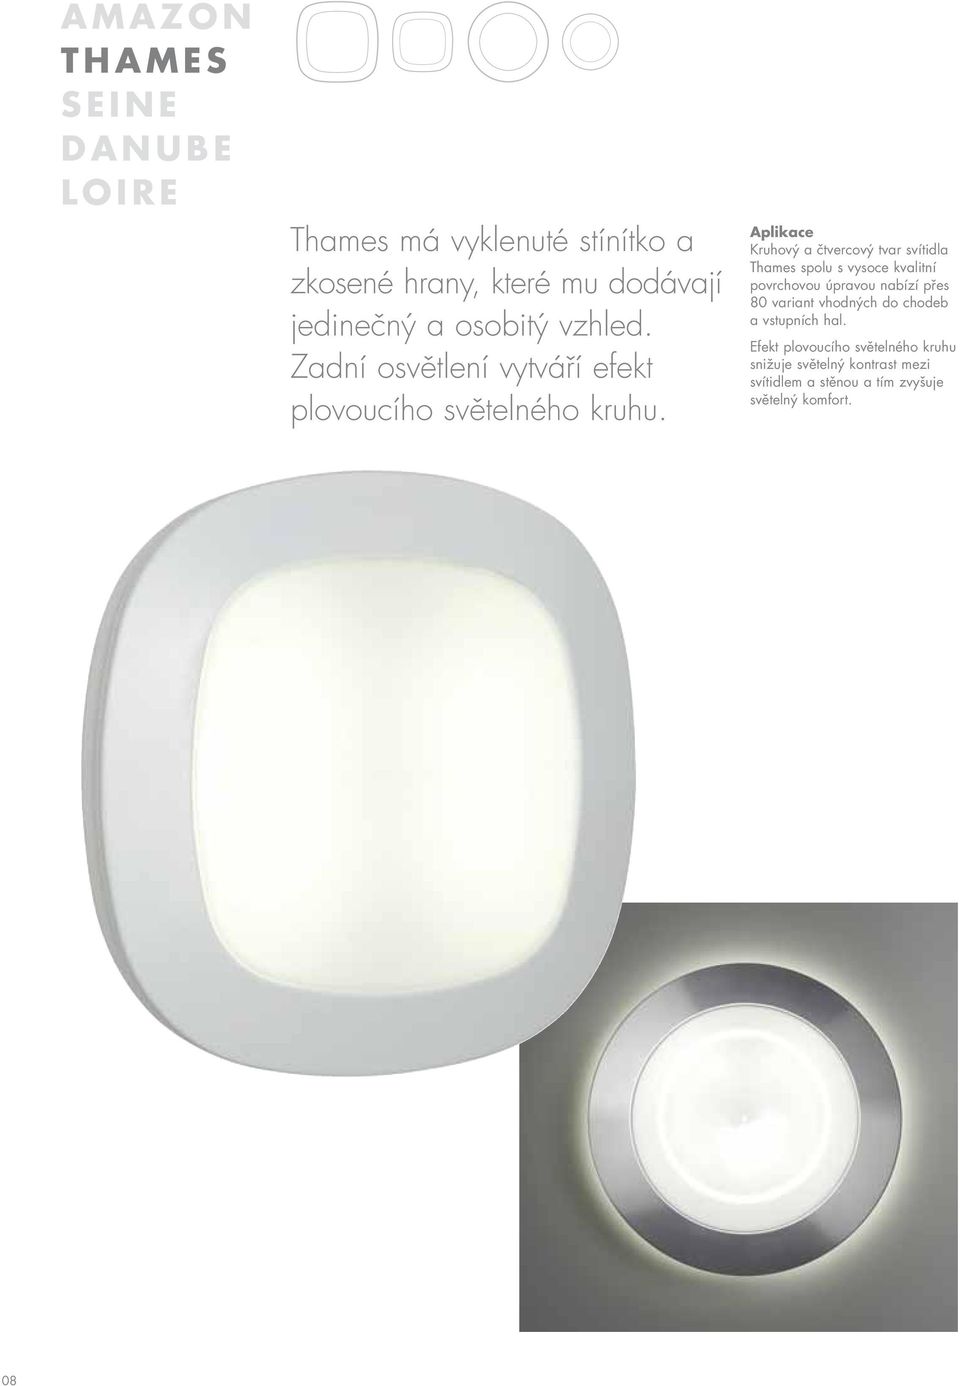 Aplikace Kruhový a čtvercový tvar svítidla Thames spolu s vysoce kvalitní povrchovou úpravou nabízí přes 80 variant